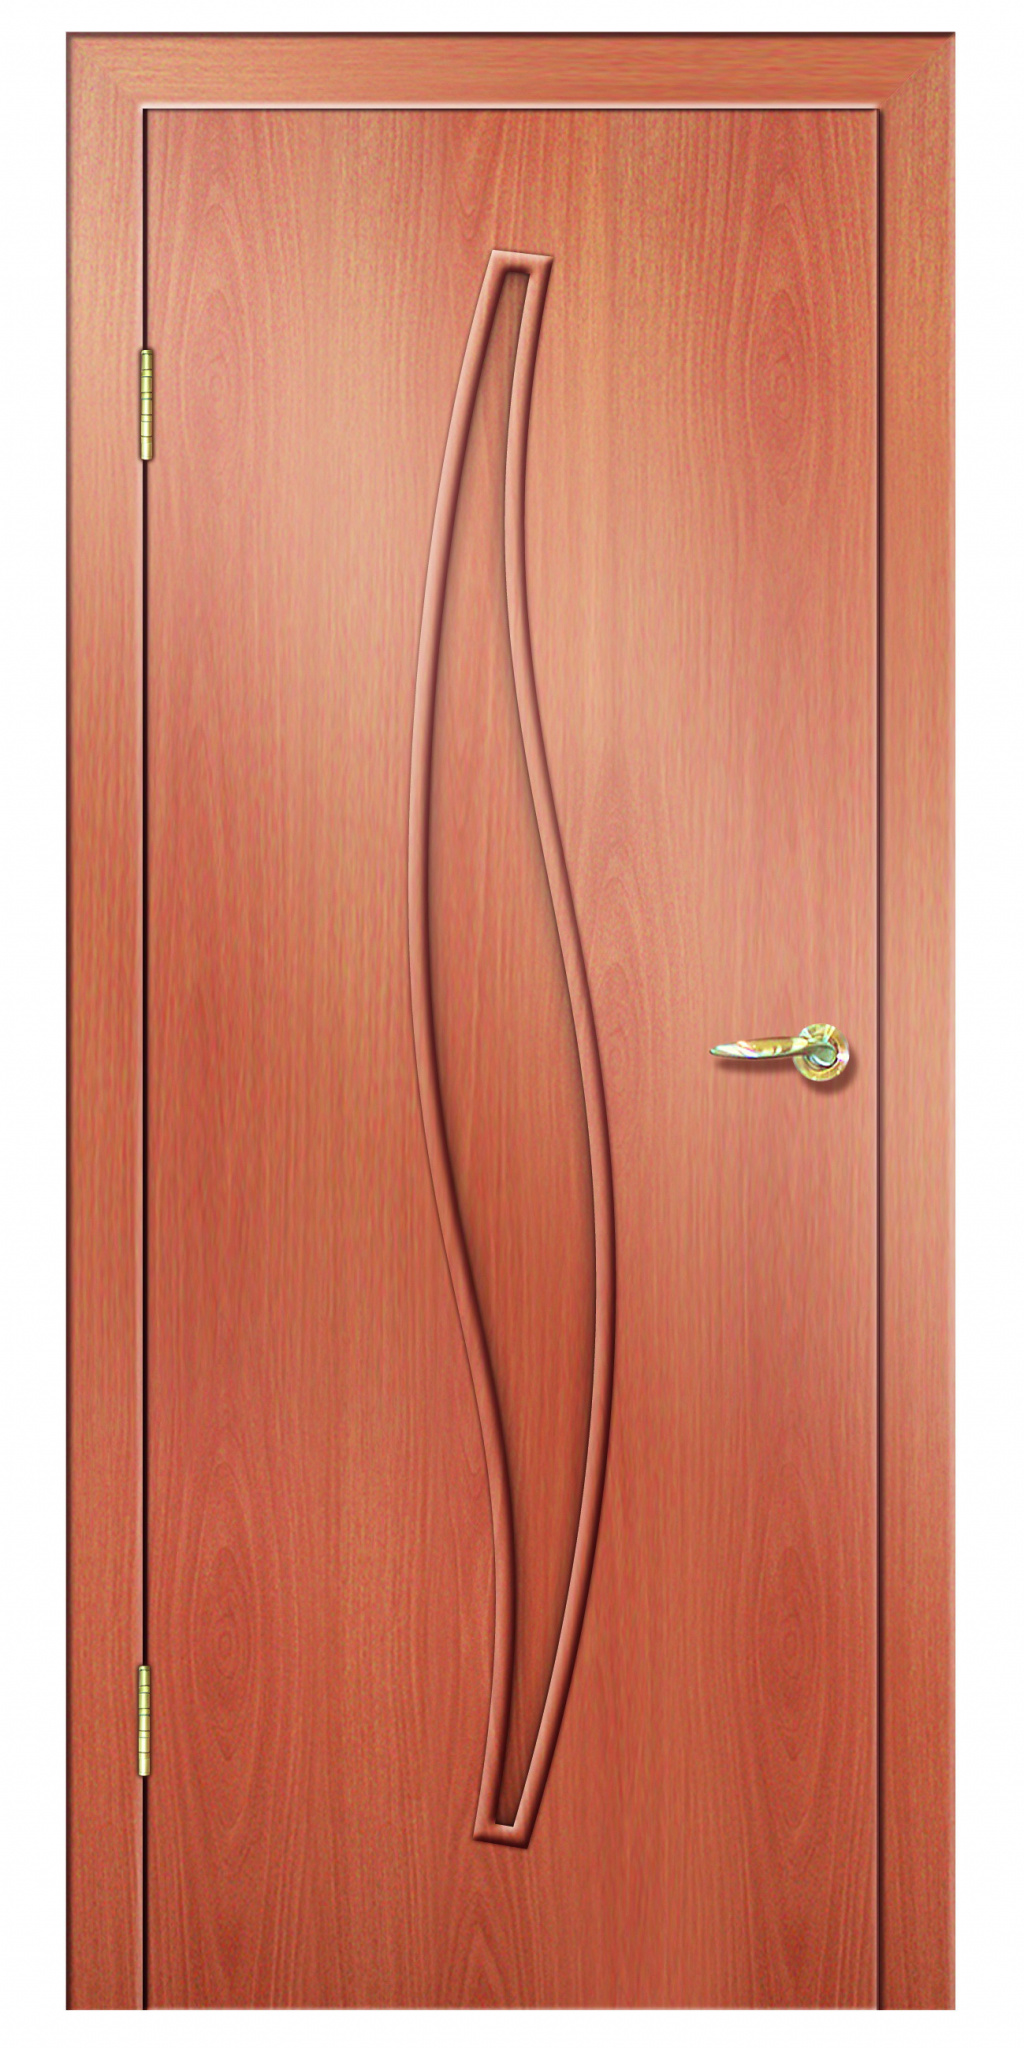 Дверная Линия Межкомнатная дверь ПГ-23, арт. 15724 - фото №2